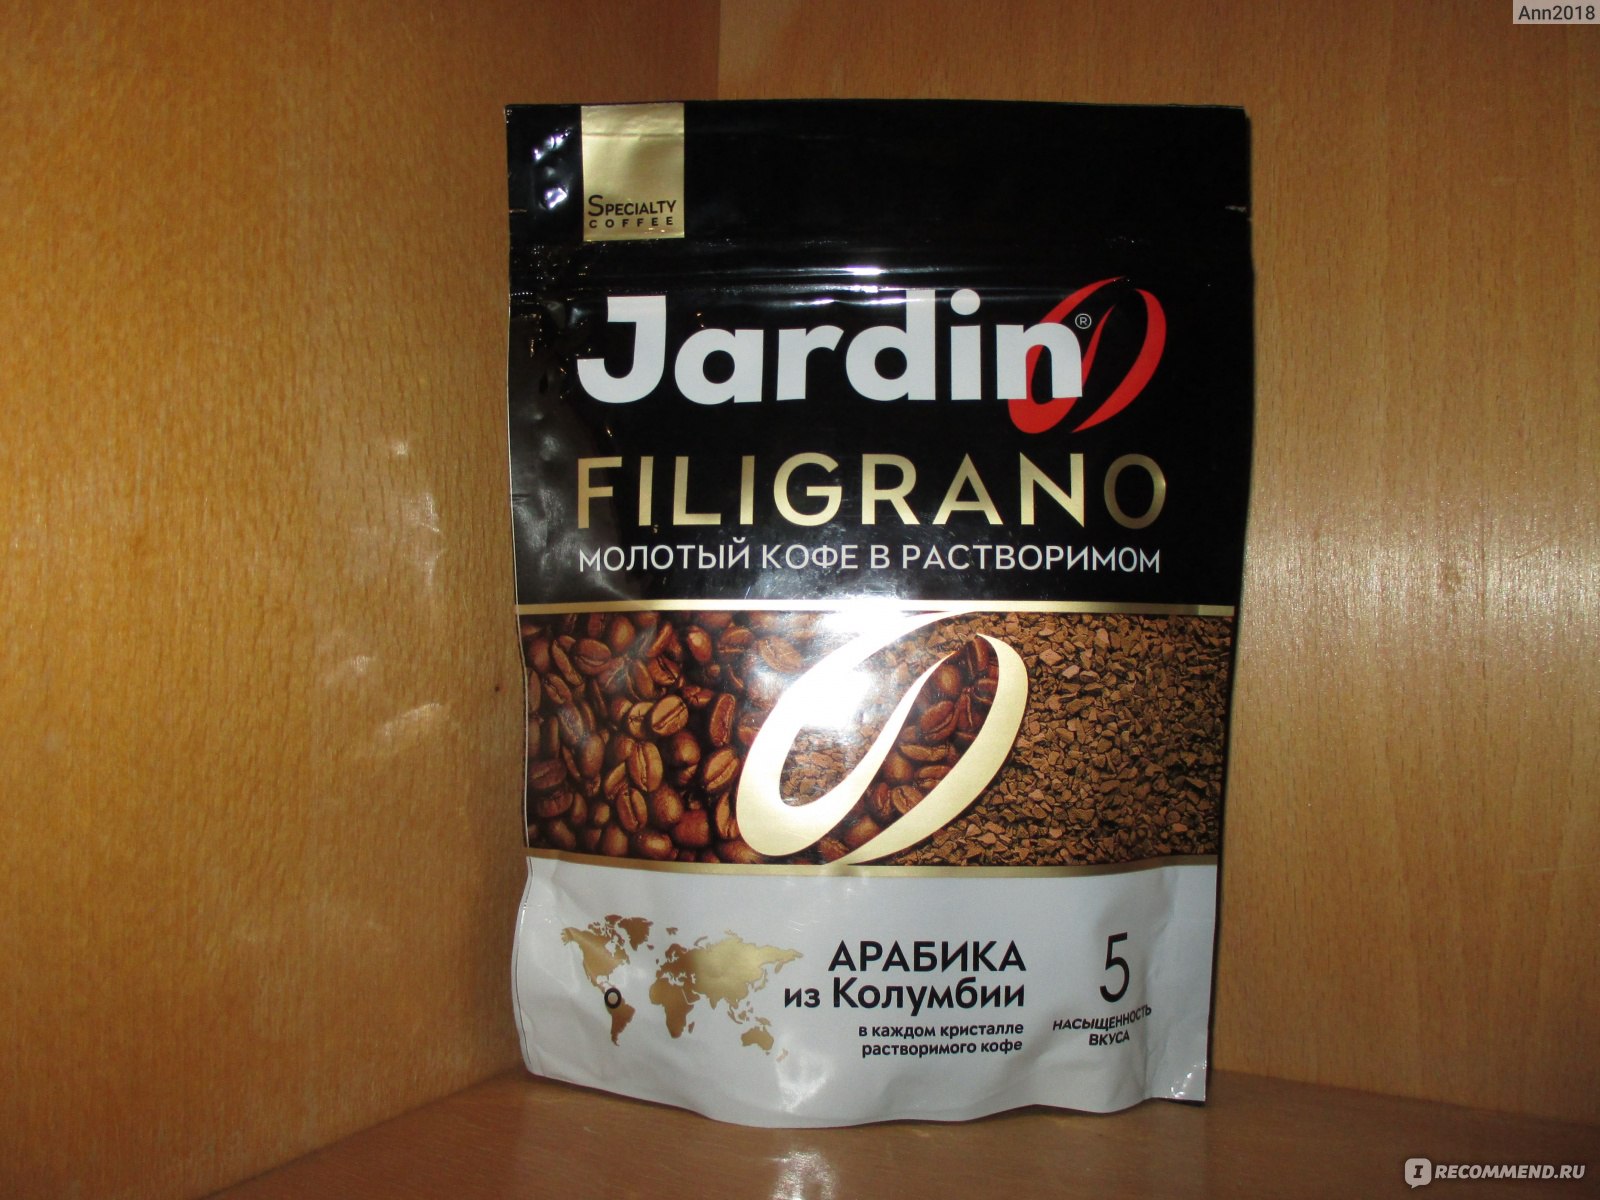 Кофе Jardin Filigrano - «Погадать на кофейной гуще в растворимом кофе? - Да  легко! Кофе 2 в 1 - натуральный внутри растворимого! (ну или наоборот)» |  отзывы